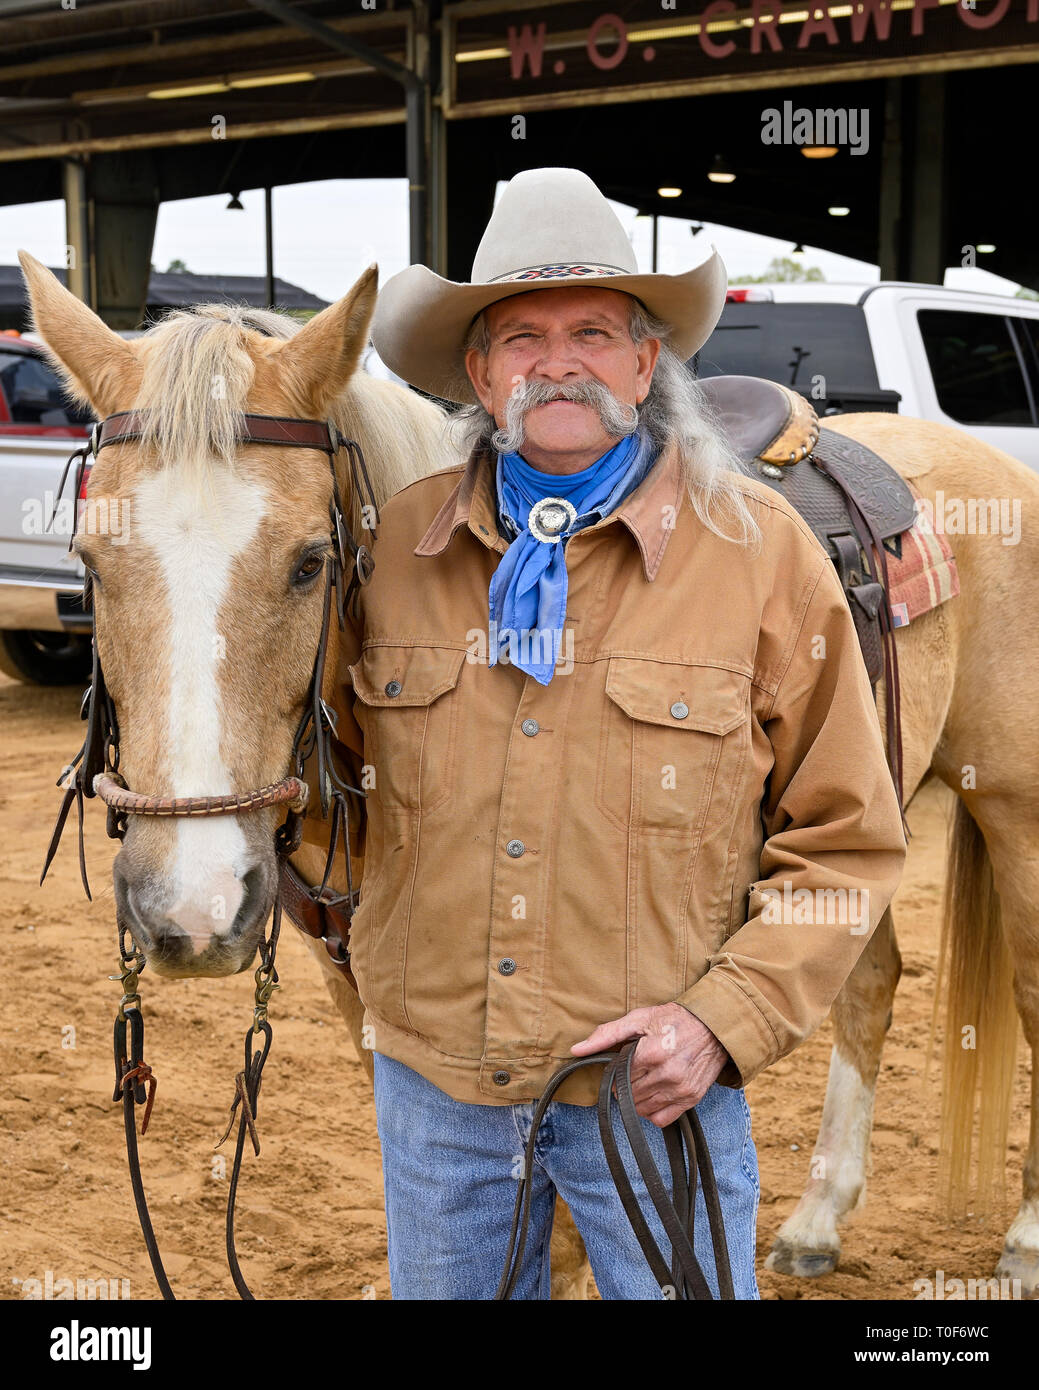 https://c8.alamy.com/compfr/t0f6wc/portrait-de-cowboy-avec-son-cheval-dans-l-usure-de-l-ouest-traditionnel-y-compris-un-cowboy-hat-a-montgomery-en-alabama-usa-t0f6wc.jpg